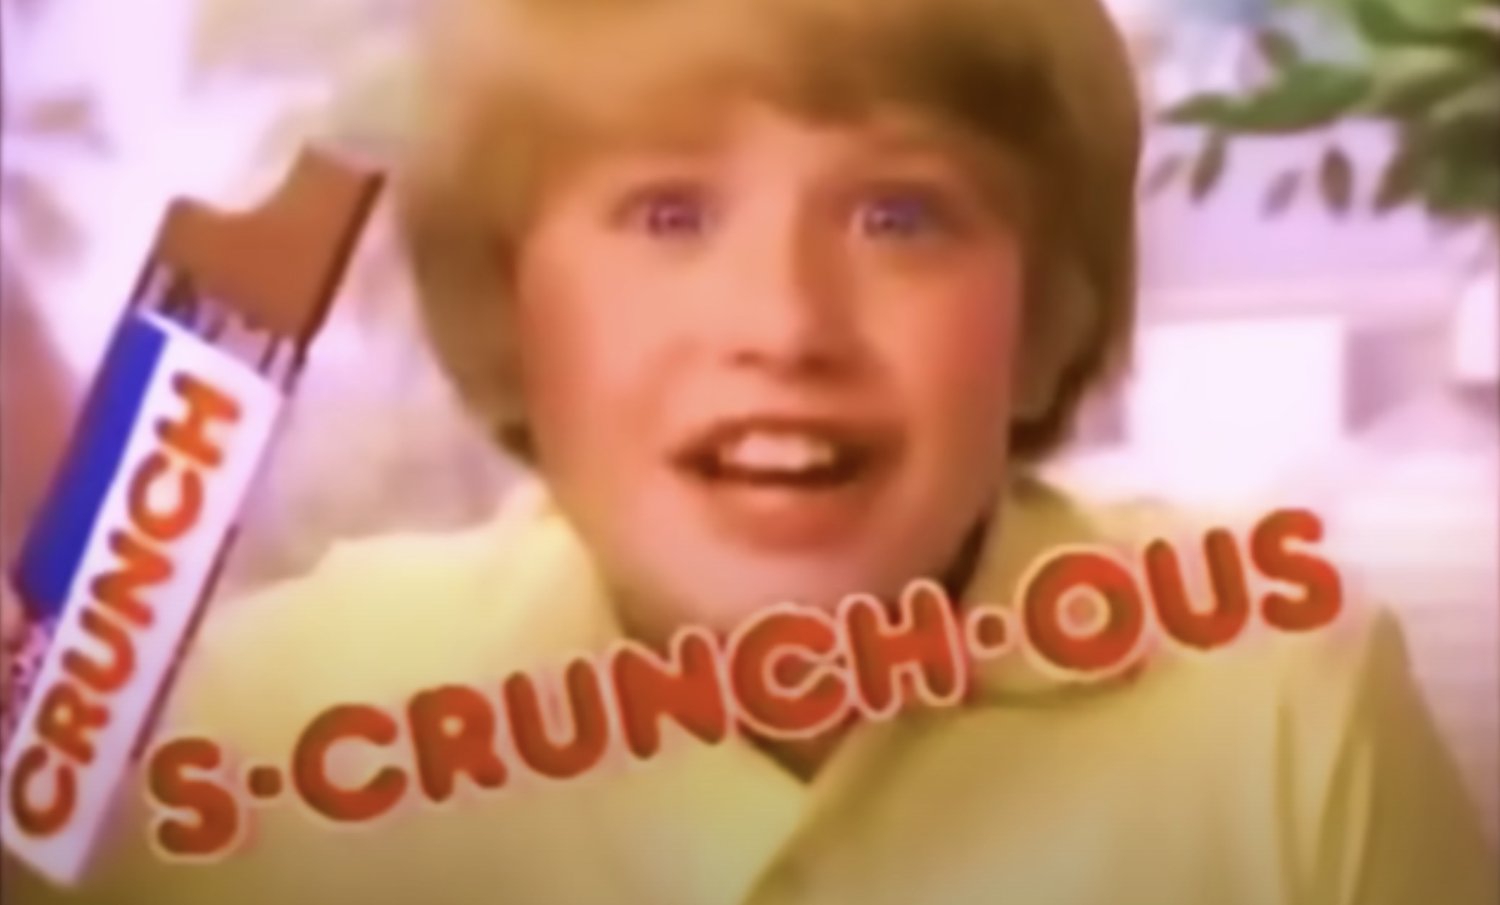 Regardez cette compilation nostalgique de publicités télévisées des années 1970 et 1980